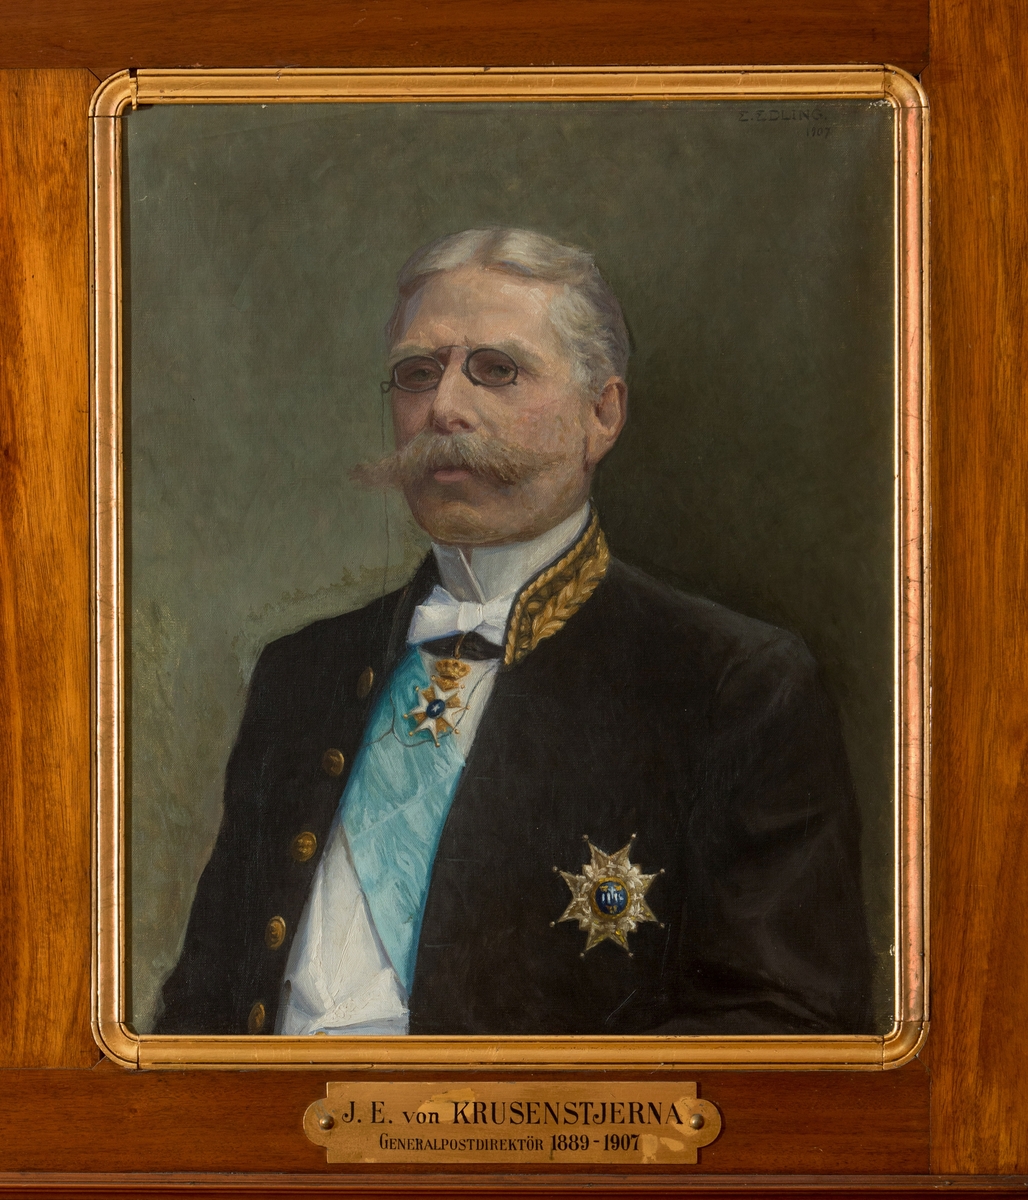 Porträtt i olja av generalpostdirektör J.E. von Krusenstjerna.

En mässingsskylt med text: "J.E. von Krusenstjerna, Generalpostdirektör 1889-1907" hör till. Duken är fäst på en plåt.